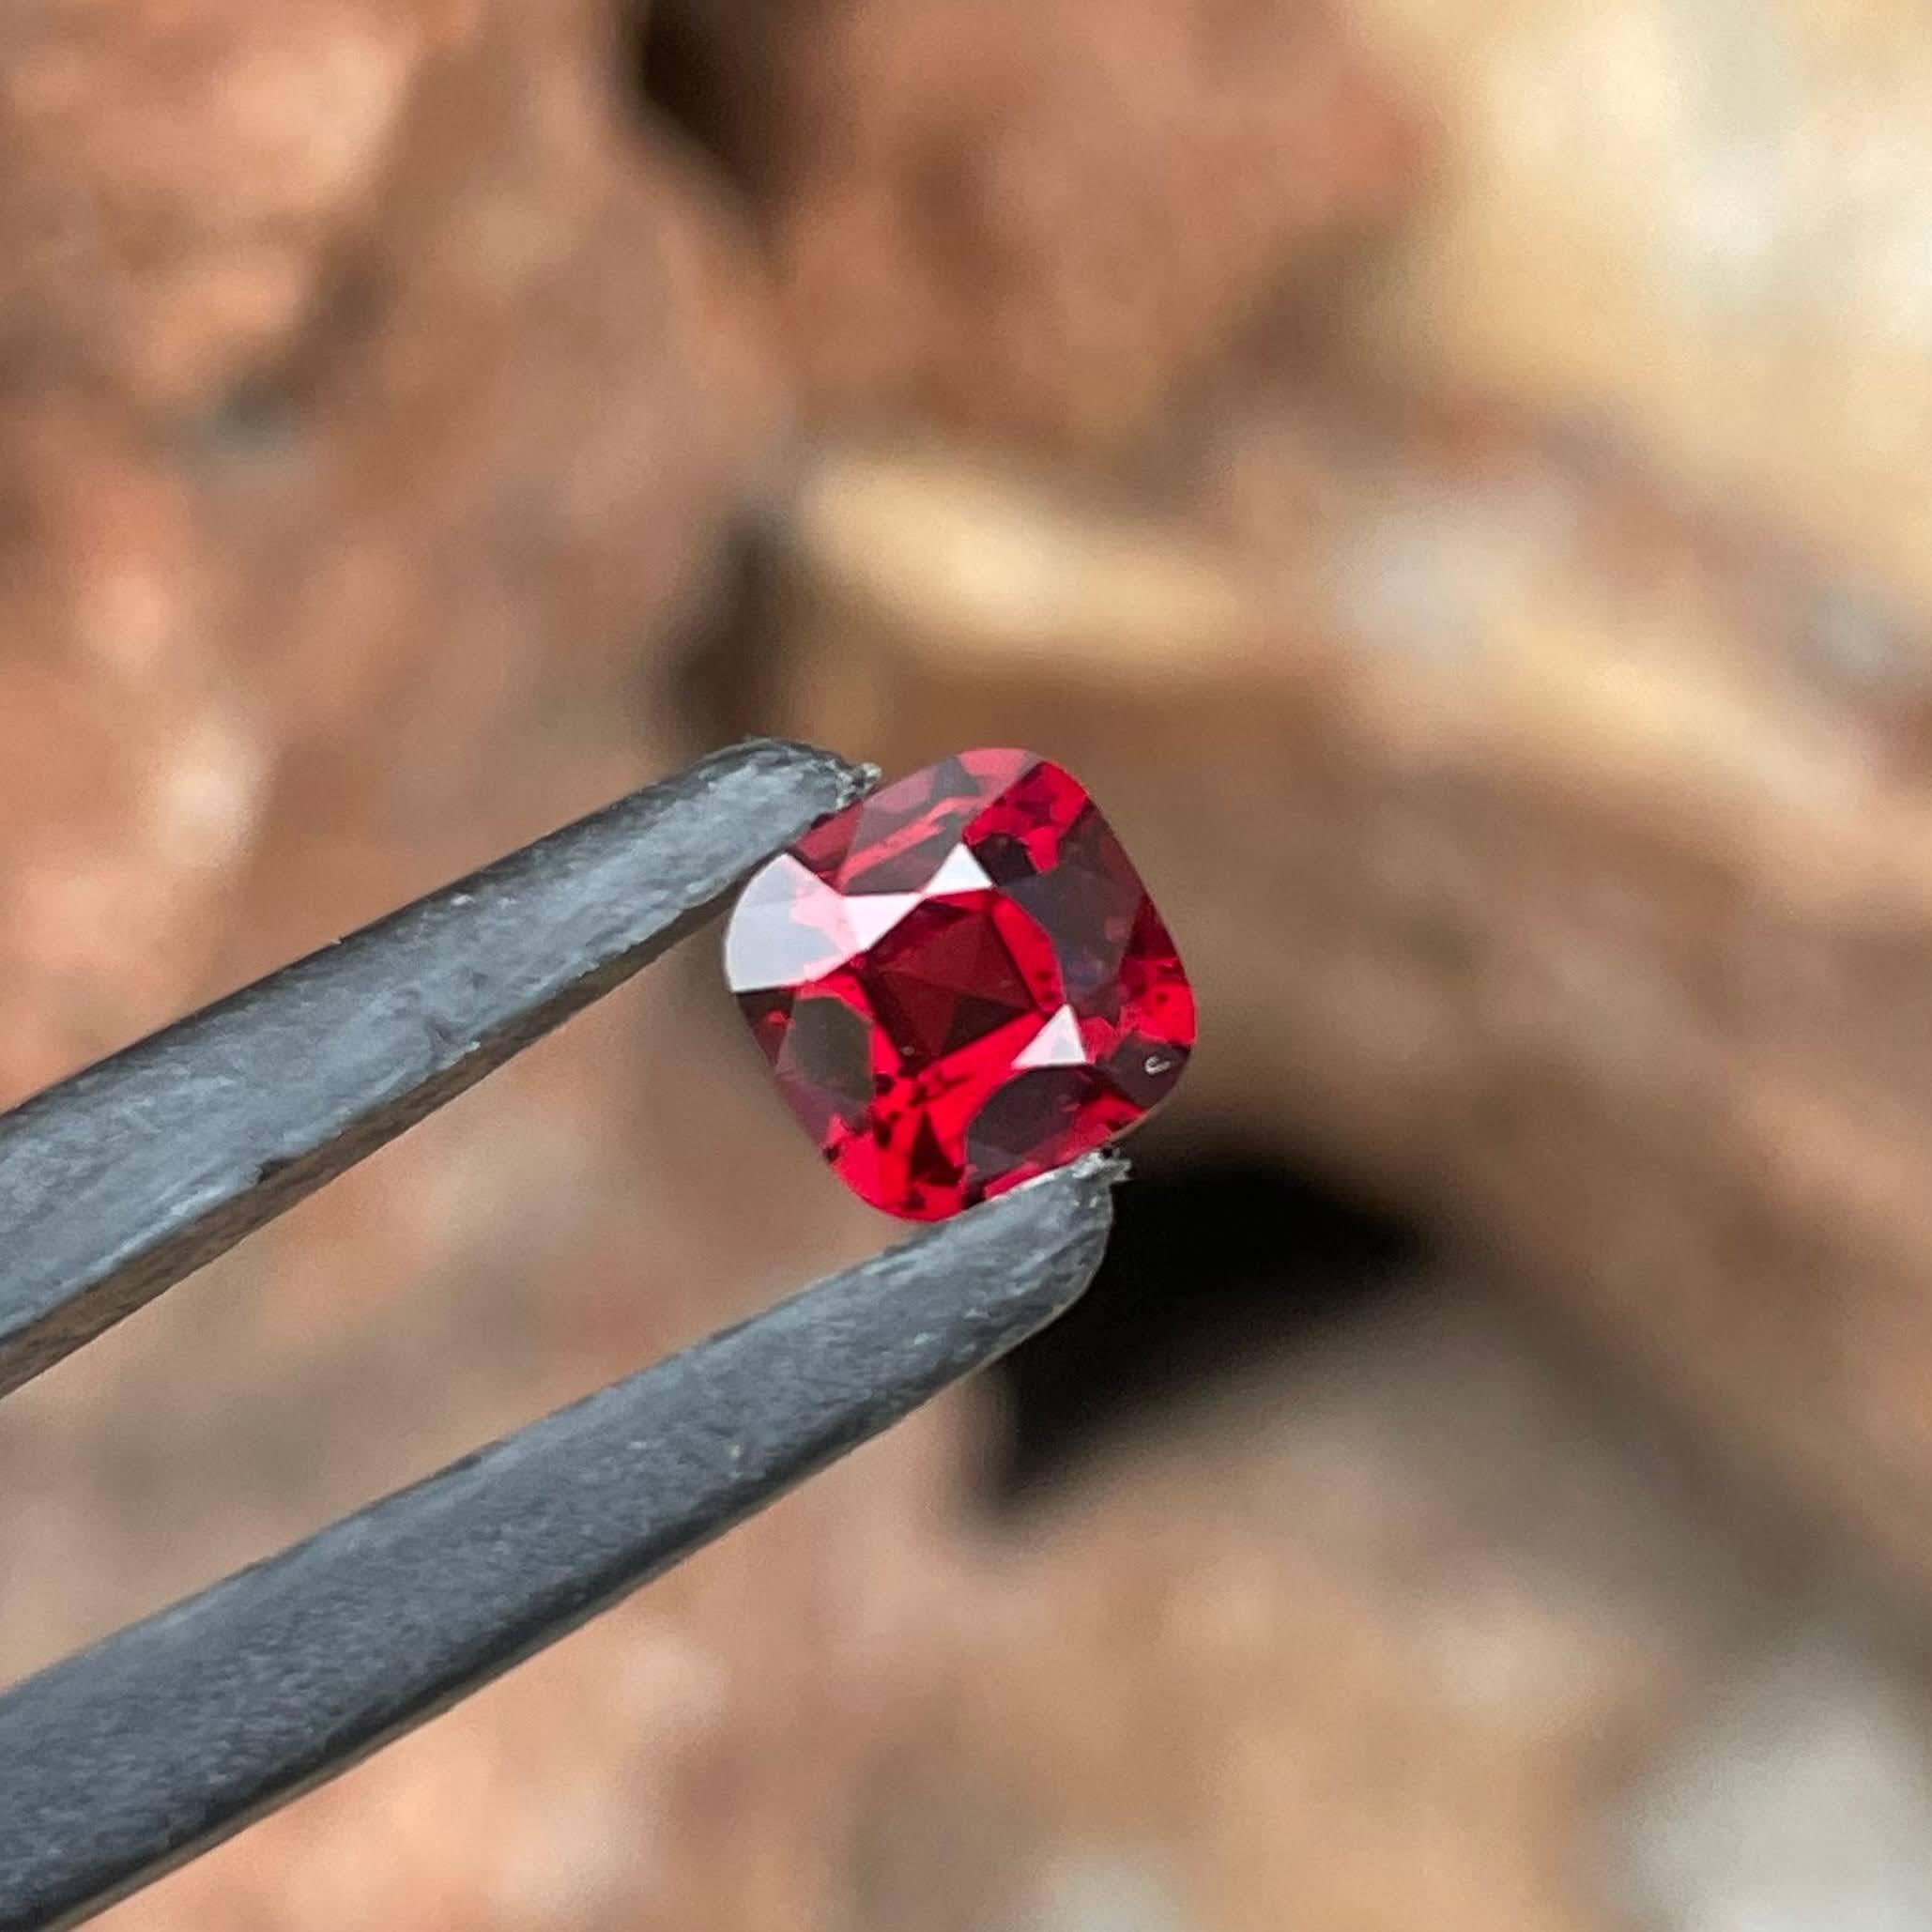 Poids 1,45 carats 
Dimensions 6,35x6,35x4,25 mm
Traitement aucun 
Origine Birmanie 
Clarté VVS
Coussin de forme 
Coupe fantaisie coussin 




Admirez l'attrait de cette exquise spinelle rouge naturelle de Birmanie de 1.45 carats, une pierre